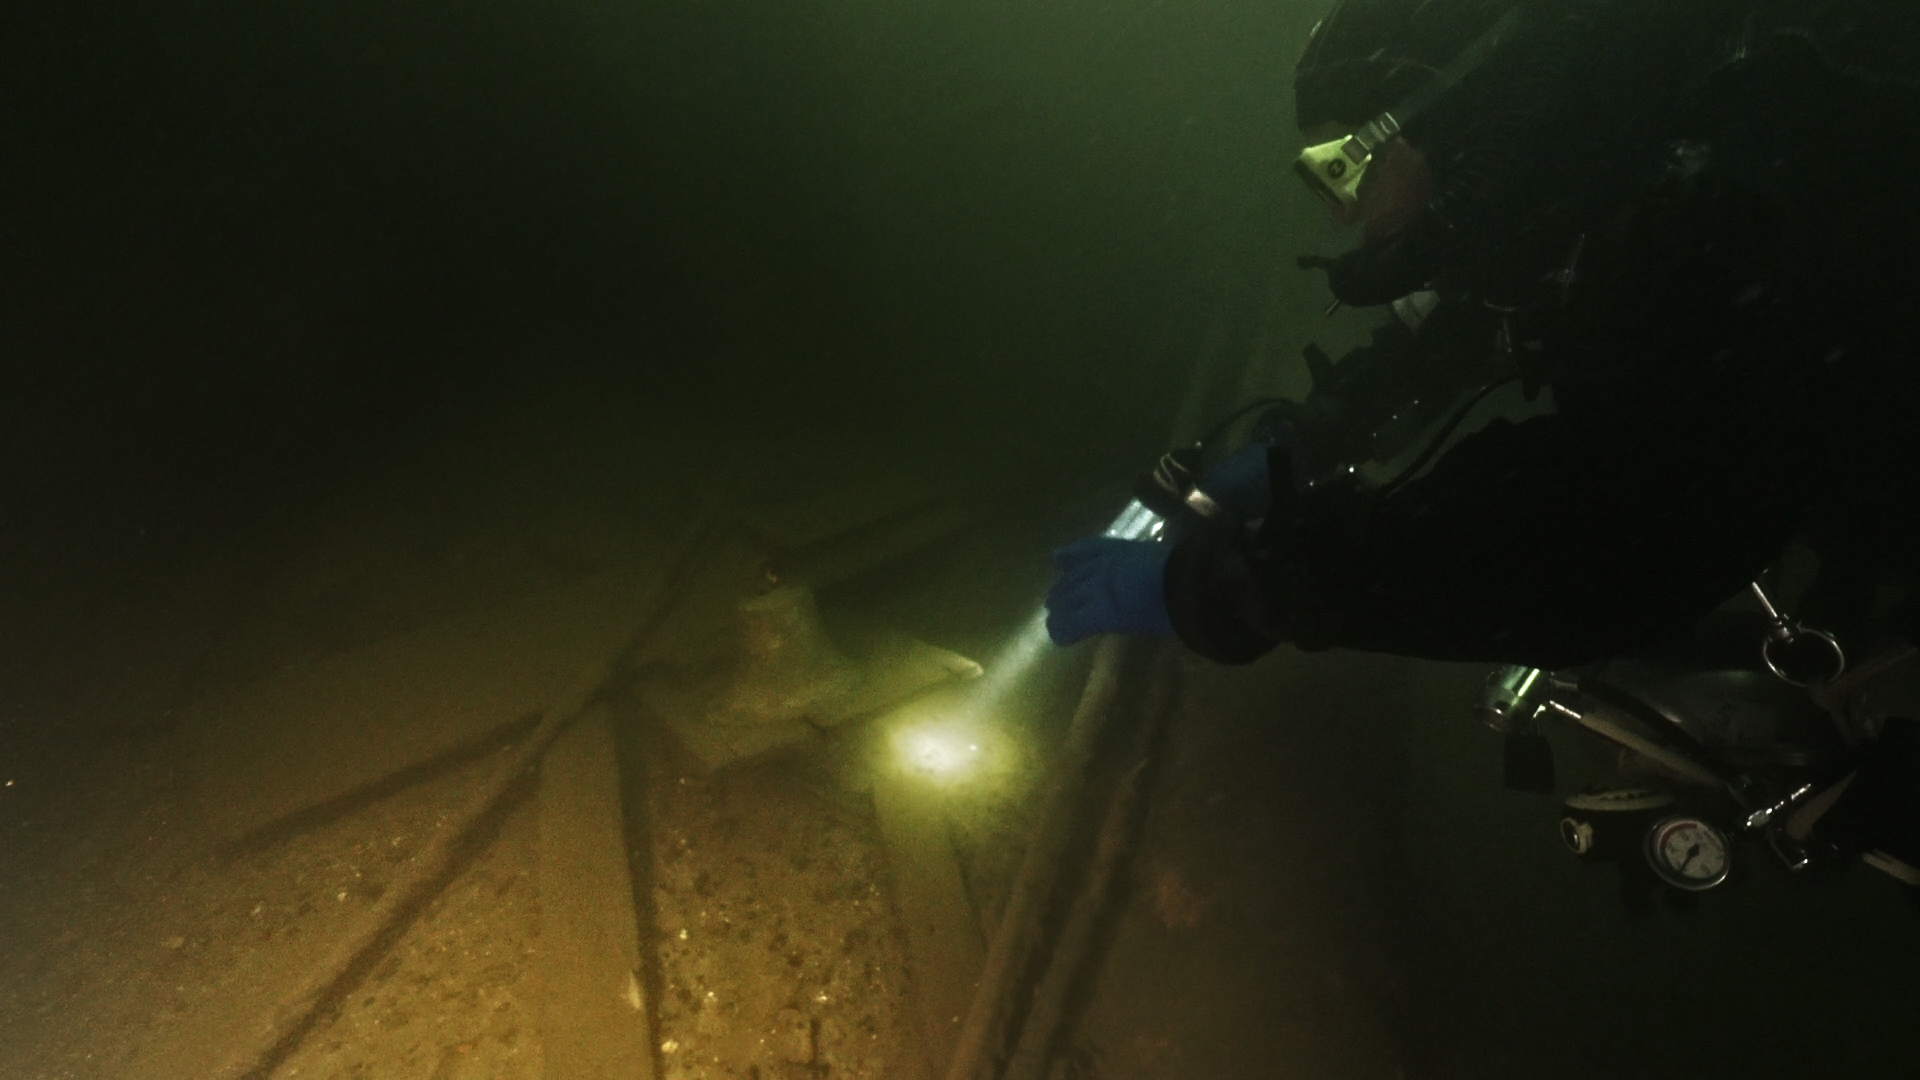 Участники экспедиции нашли сигнальный колокол плавбатареи West. Фото предоставлено Разведывательно-водолазной командой 